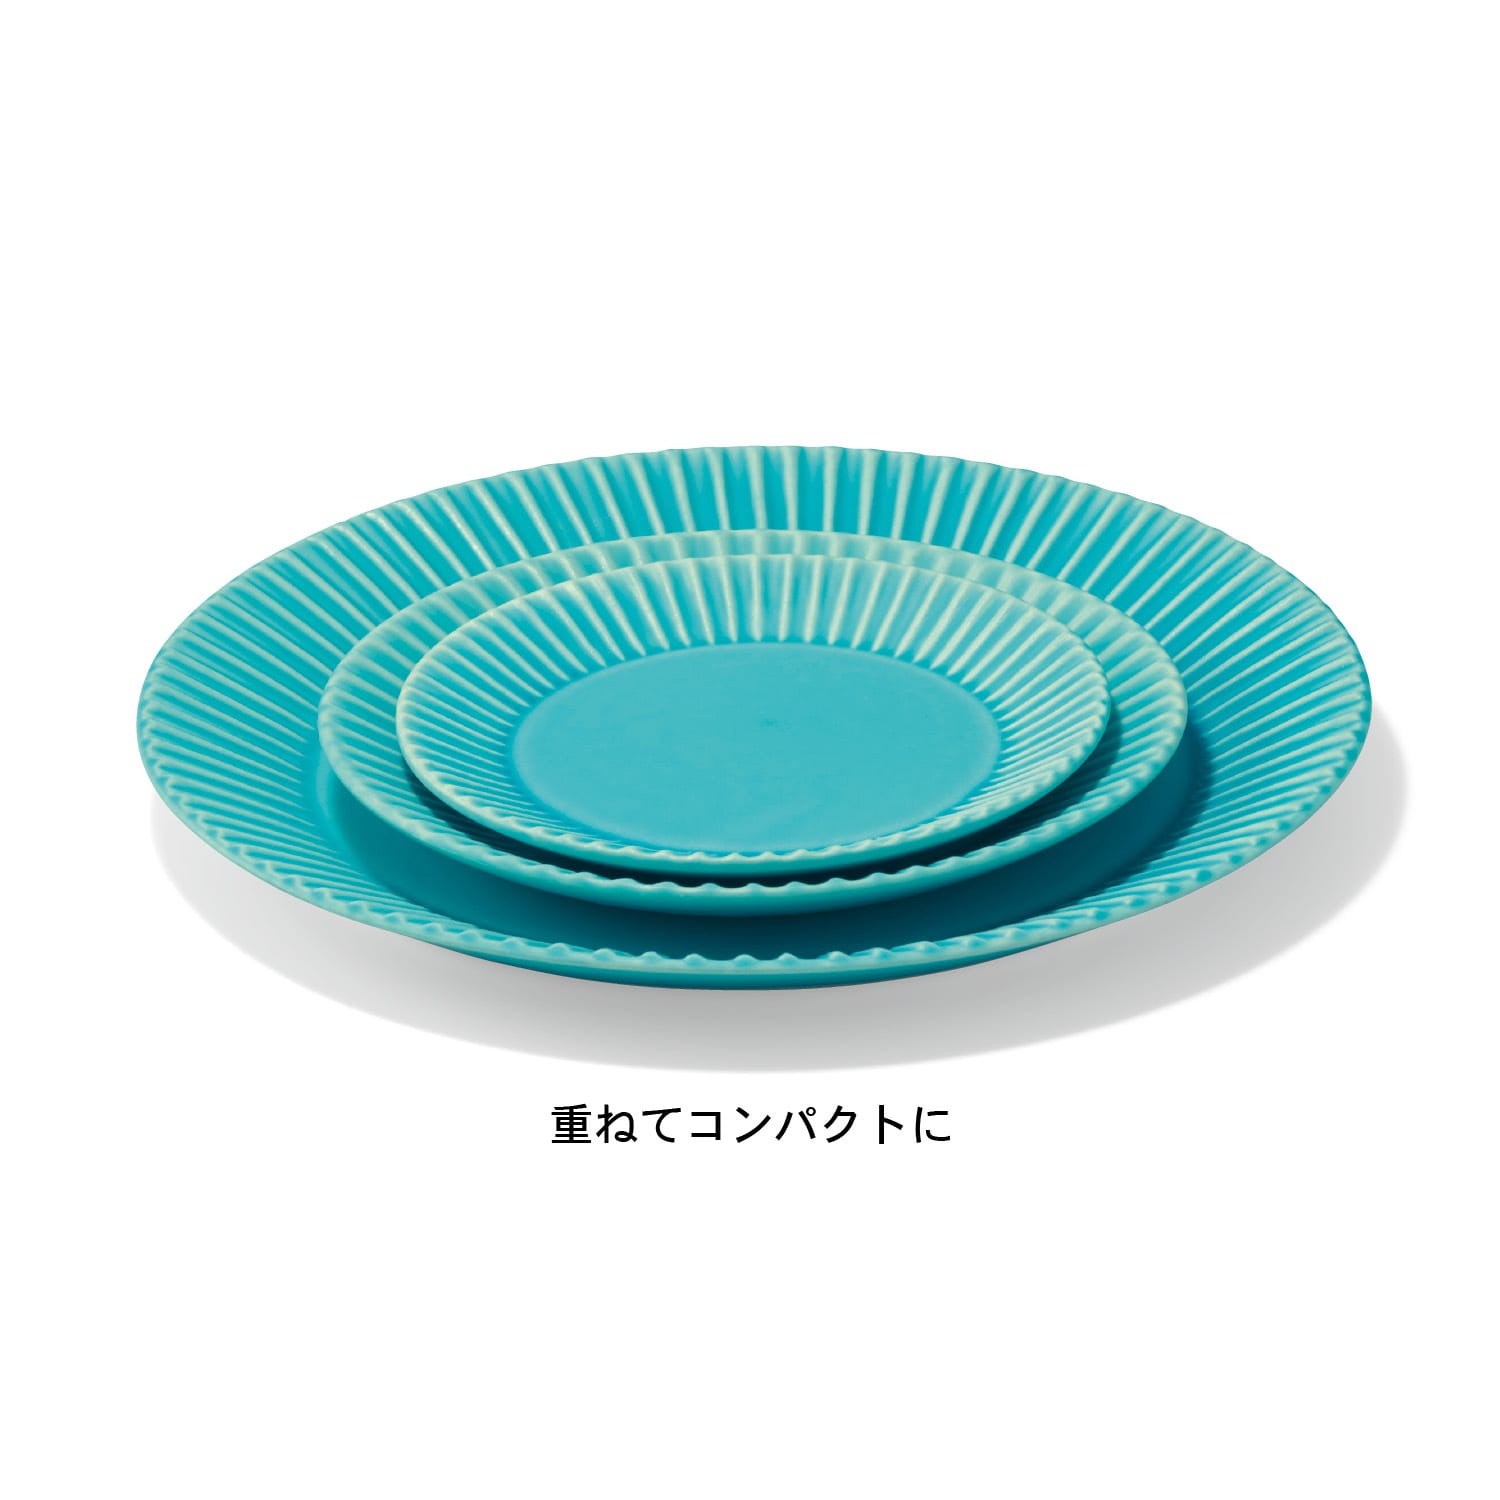 作山窯の「SAKUZAN STRIPE」プレート美濃焼［日本製］（お皿/平皿 